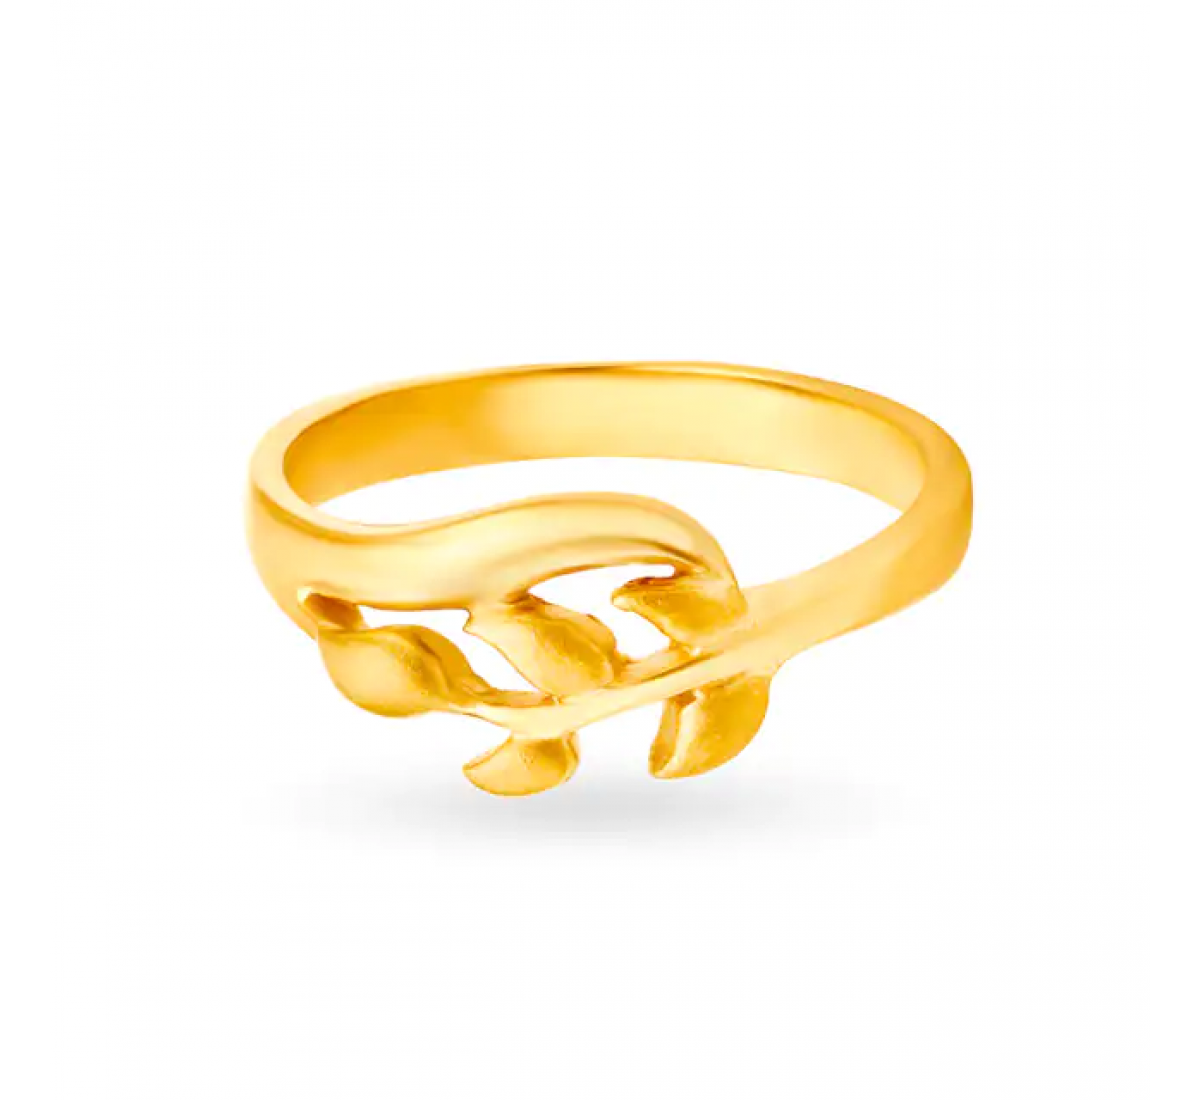 Splendid Leaf Sprig Gold Ring